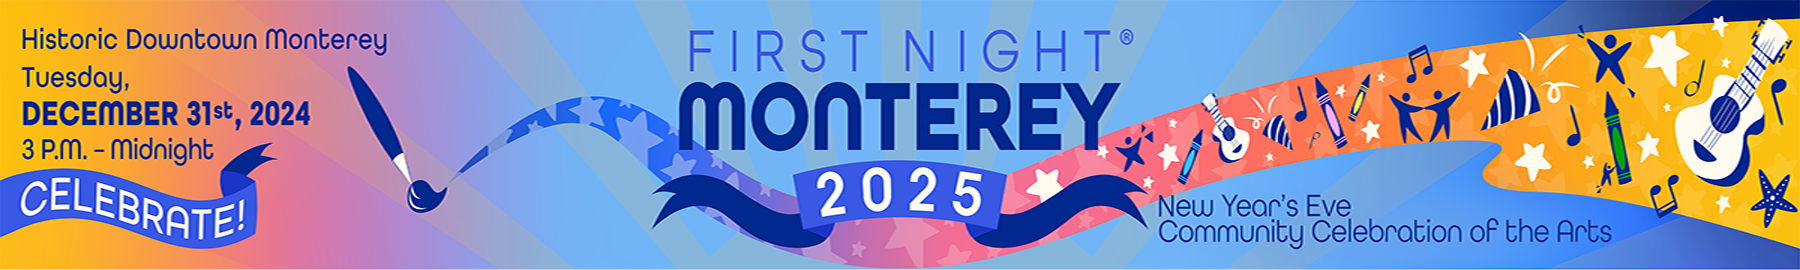 First Night Monterey 2025